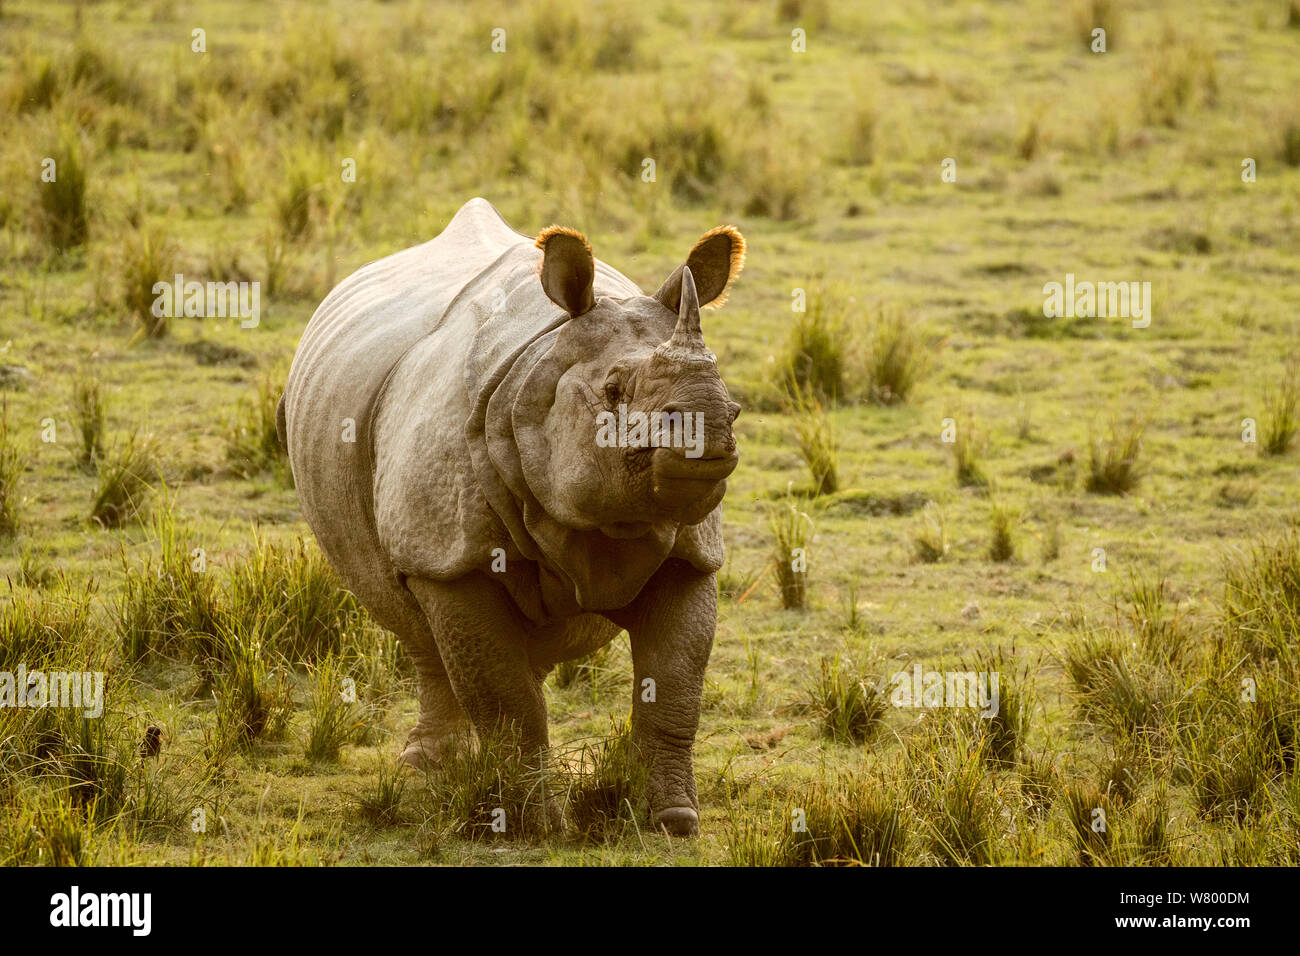 Le rhinocéros indien (Rhinoceros unicornis), homme, parc national de Kaziranga, Assam, Inde Banque D'Images